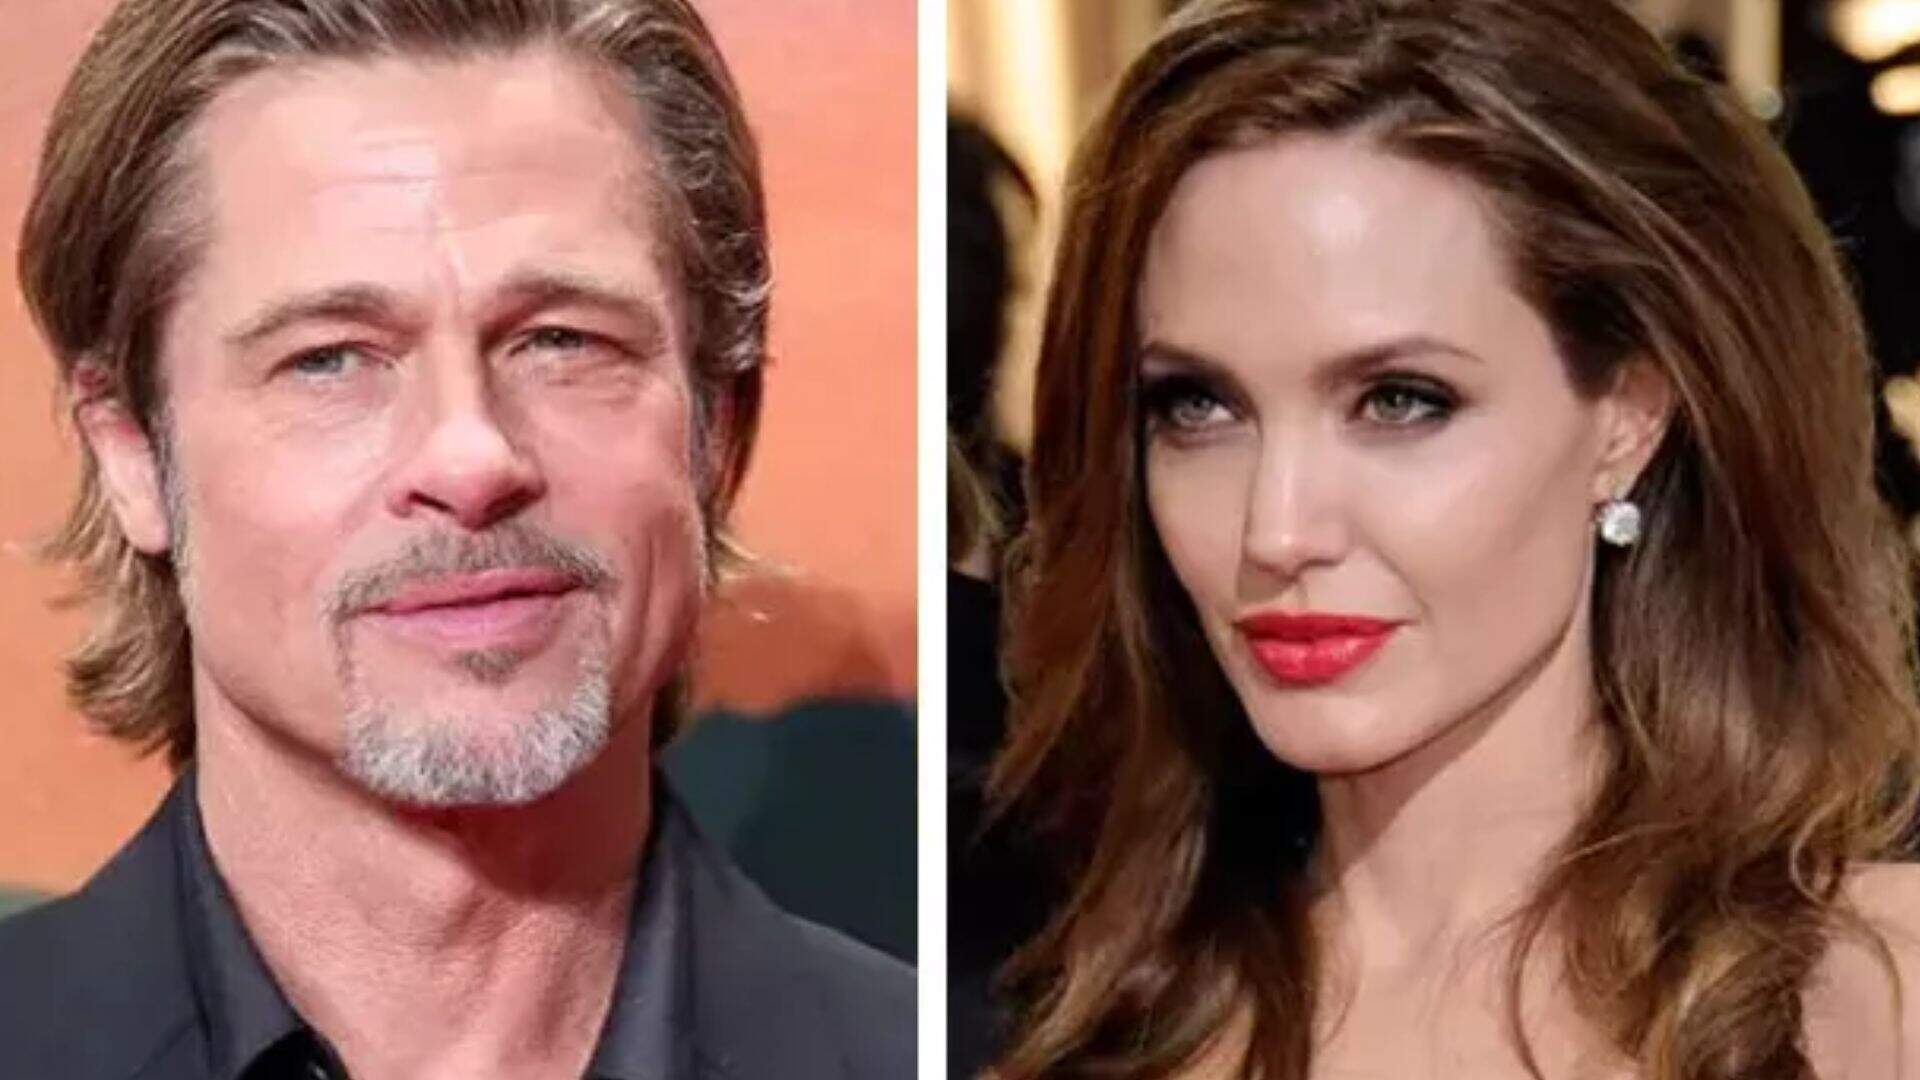 Vaza e-mail polêmico com Angelina Jolie revelando motivo assustador para terminar com Brad Pitt - Metropolitana FM